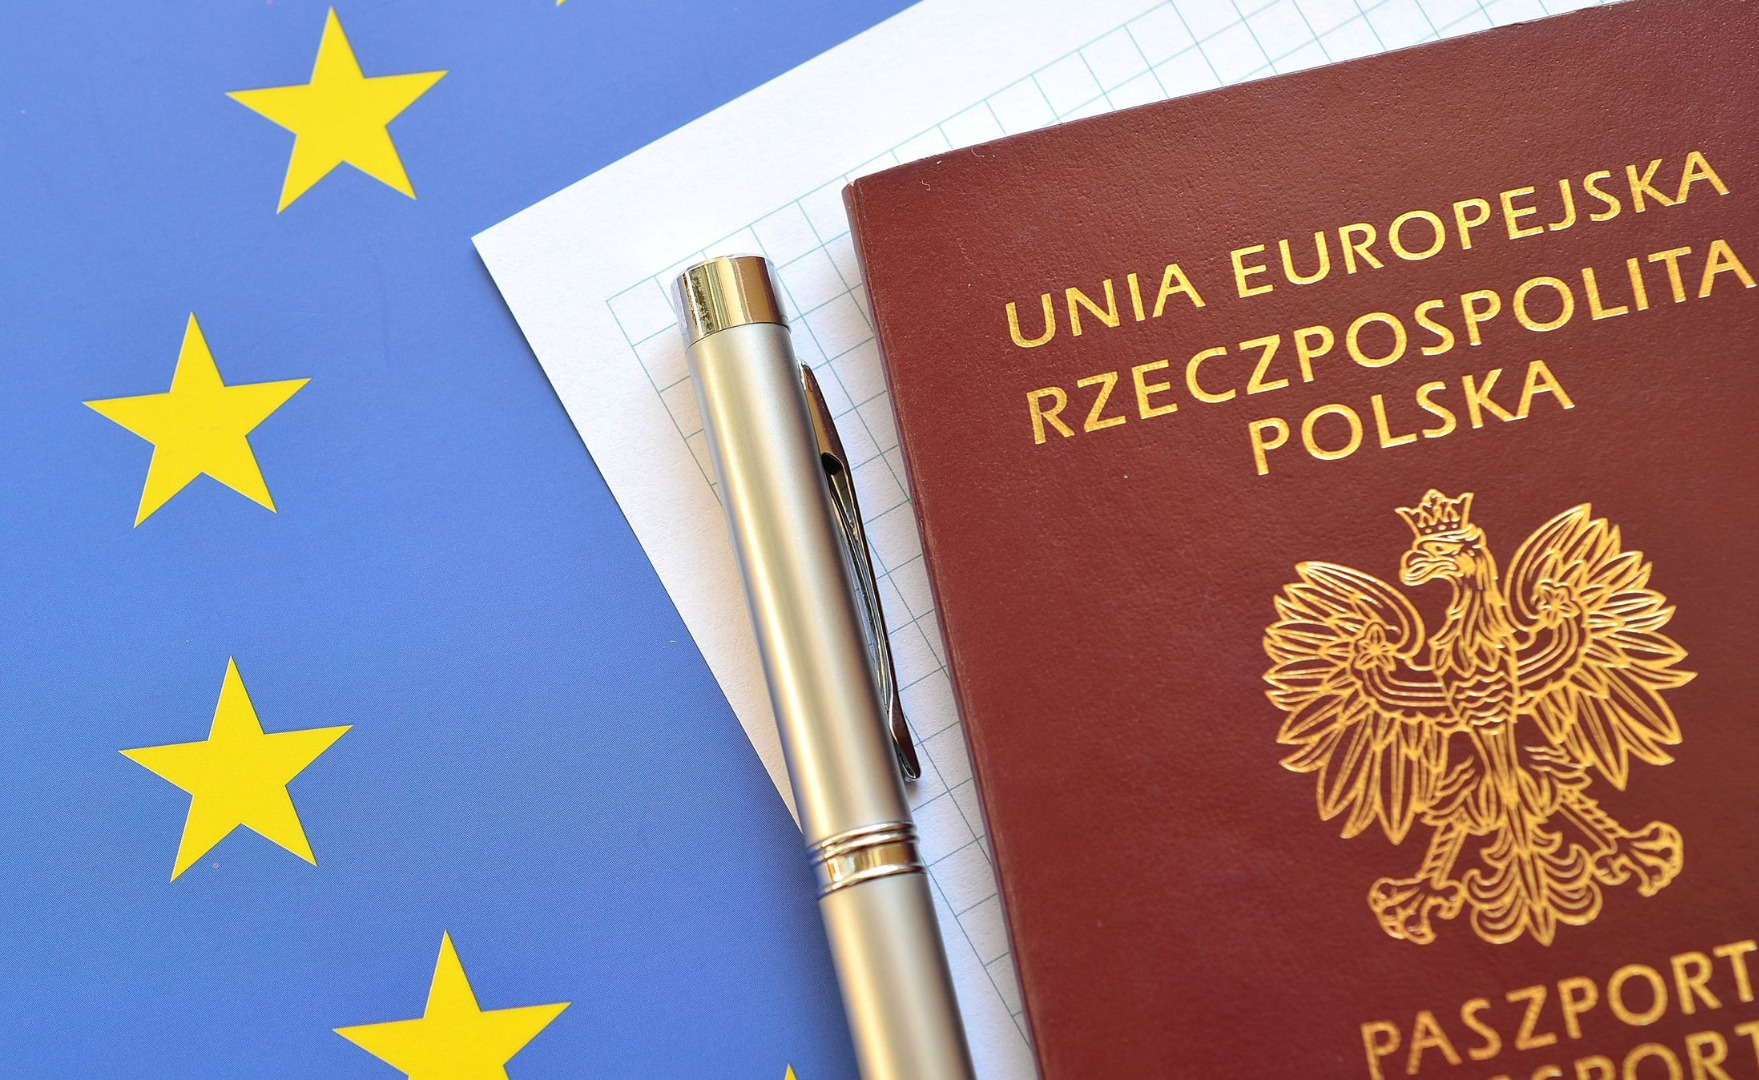 Paszport jak polisa. Coraz więcej Brazylijczyków i Argentyńczyków  potwierdza polskie obywatelstwo - GazetaPrawna.pl